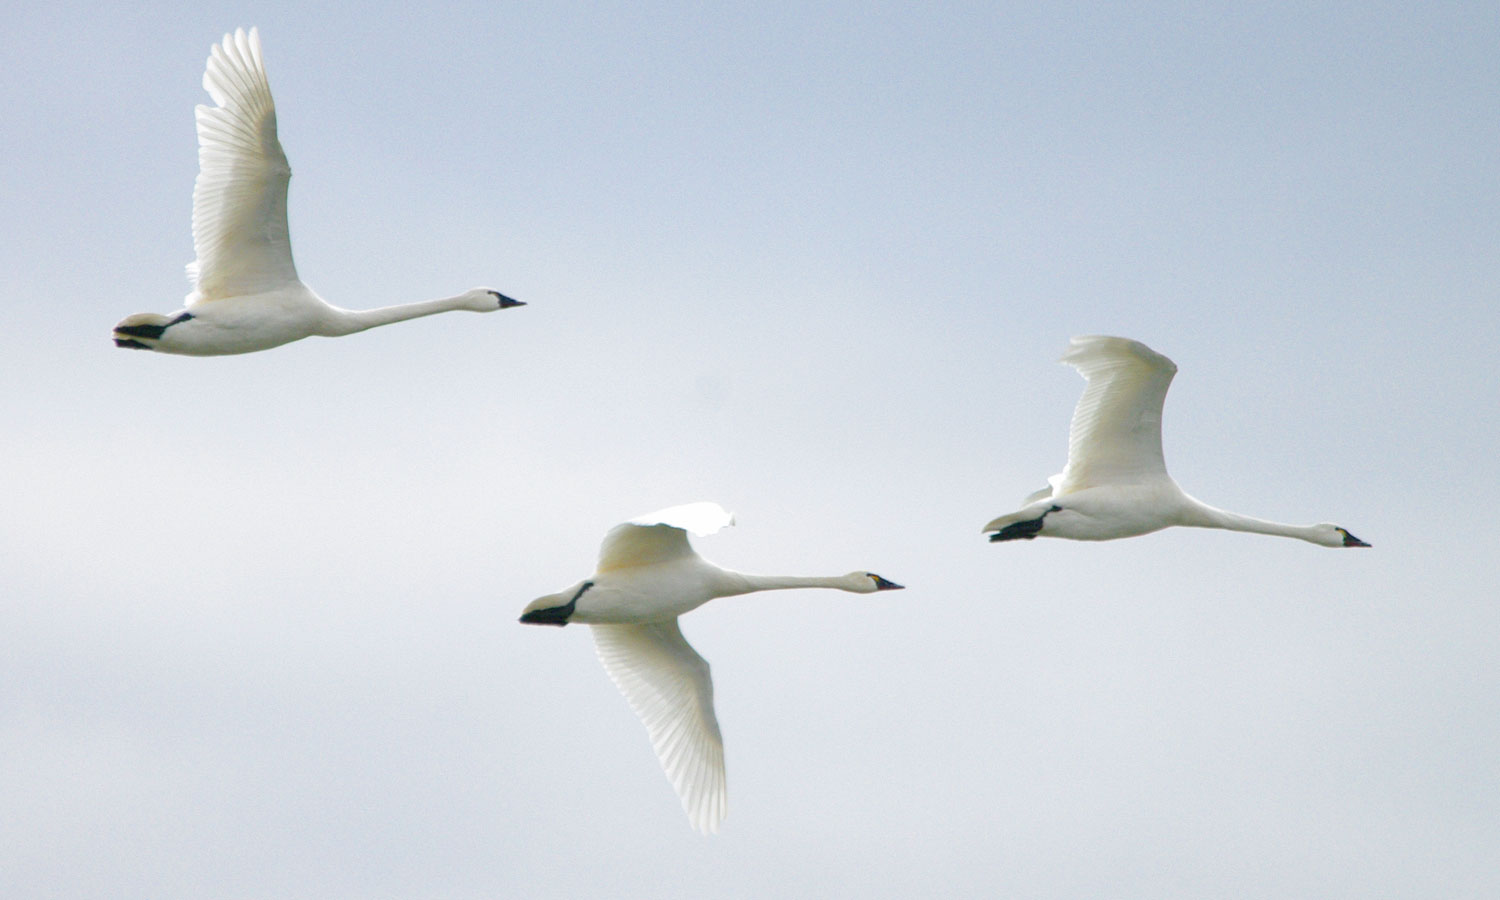 Three beautiful tundra swans